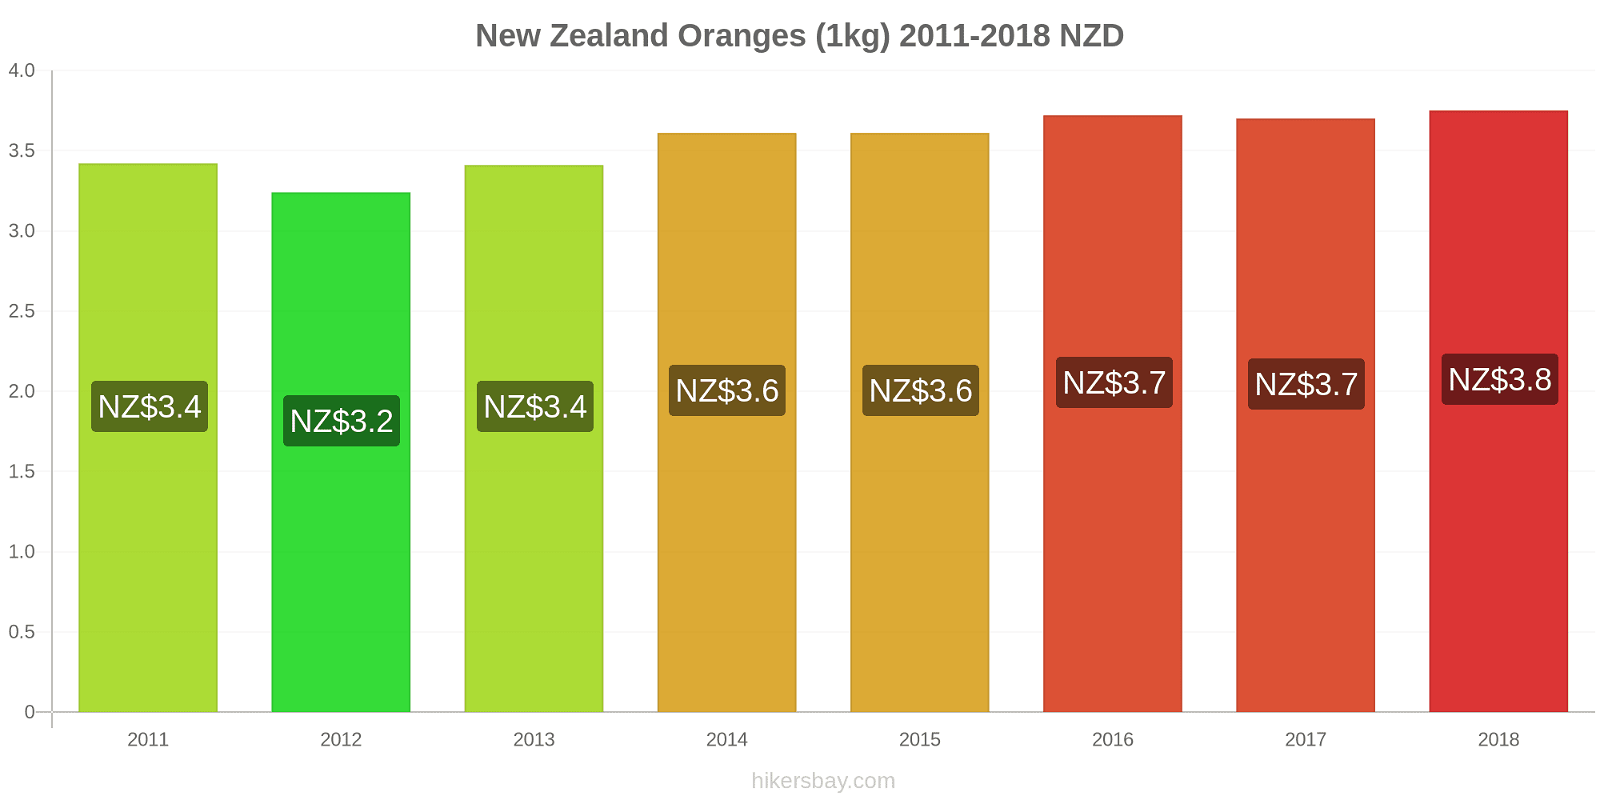 New Zealand price changes Oranges (1kg) hikersbay.com